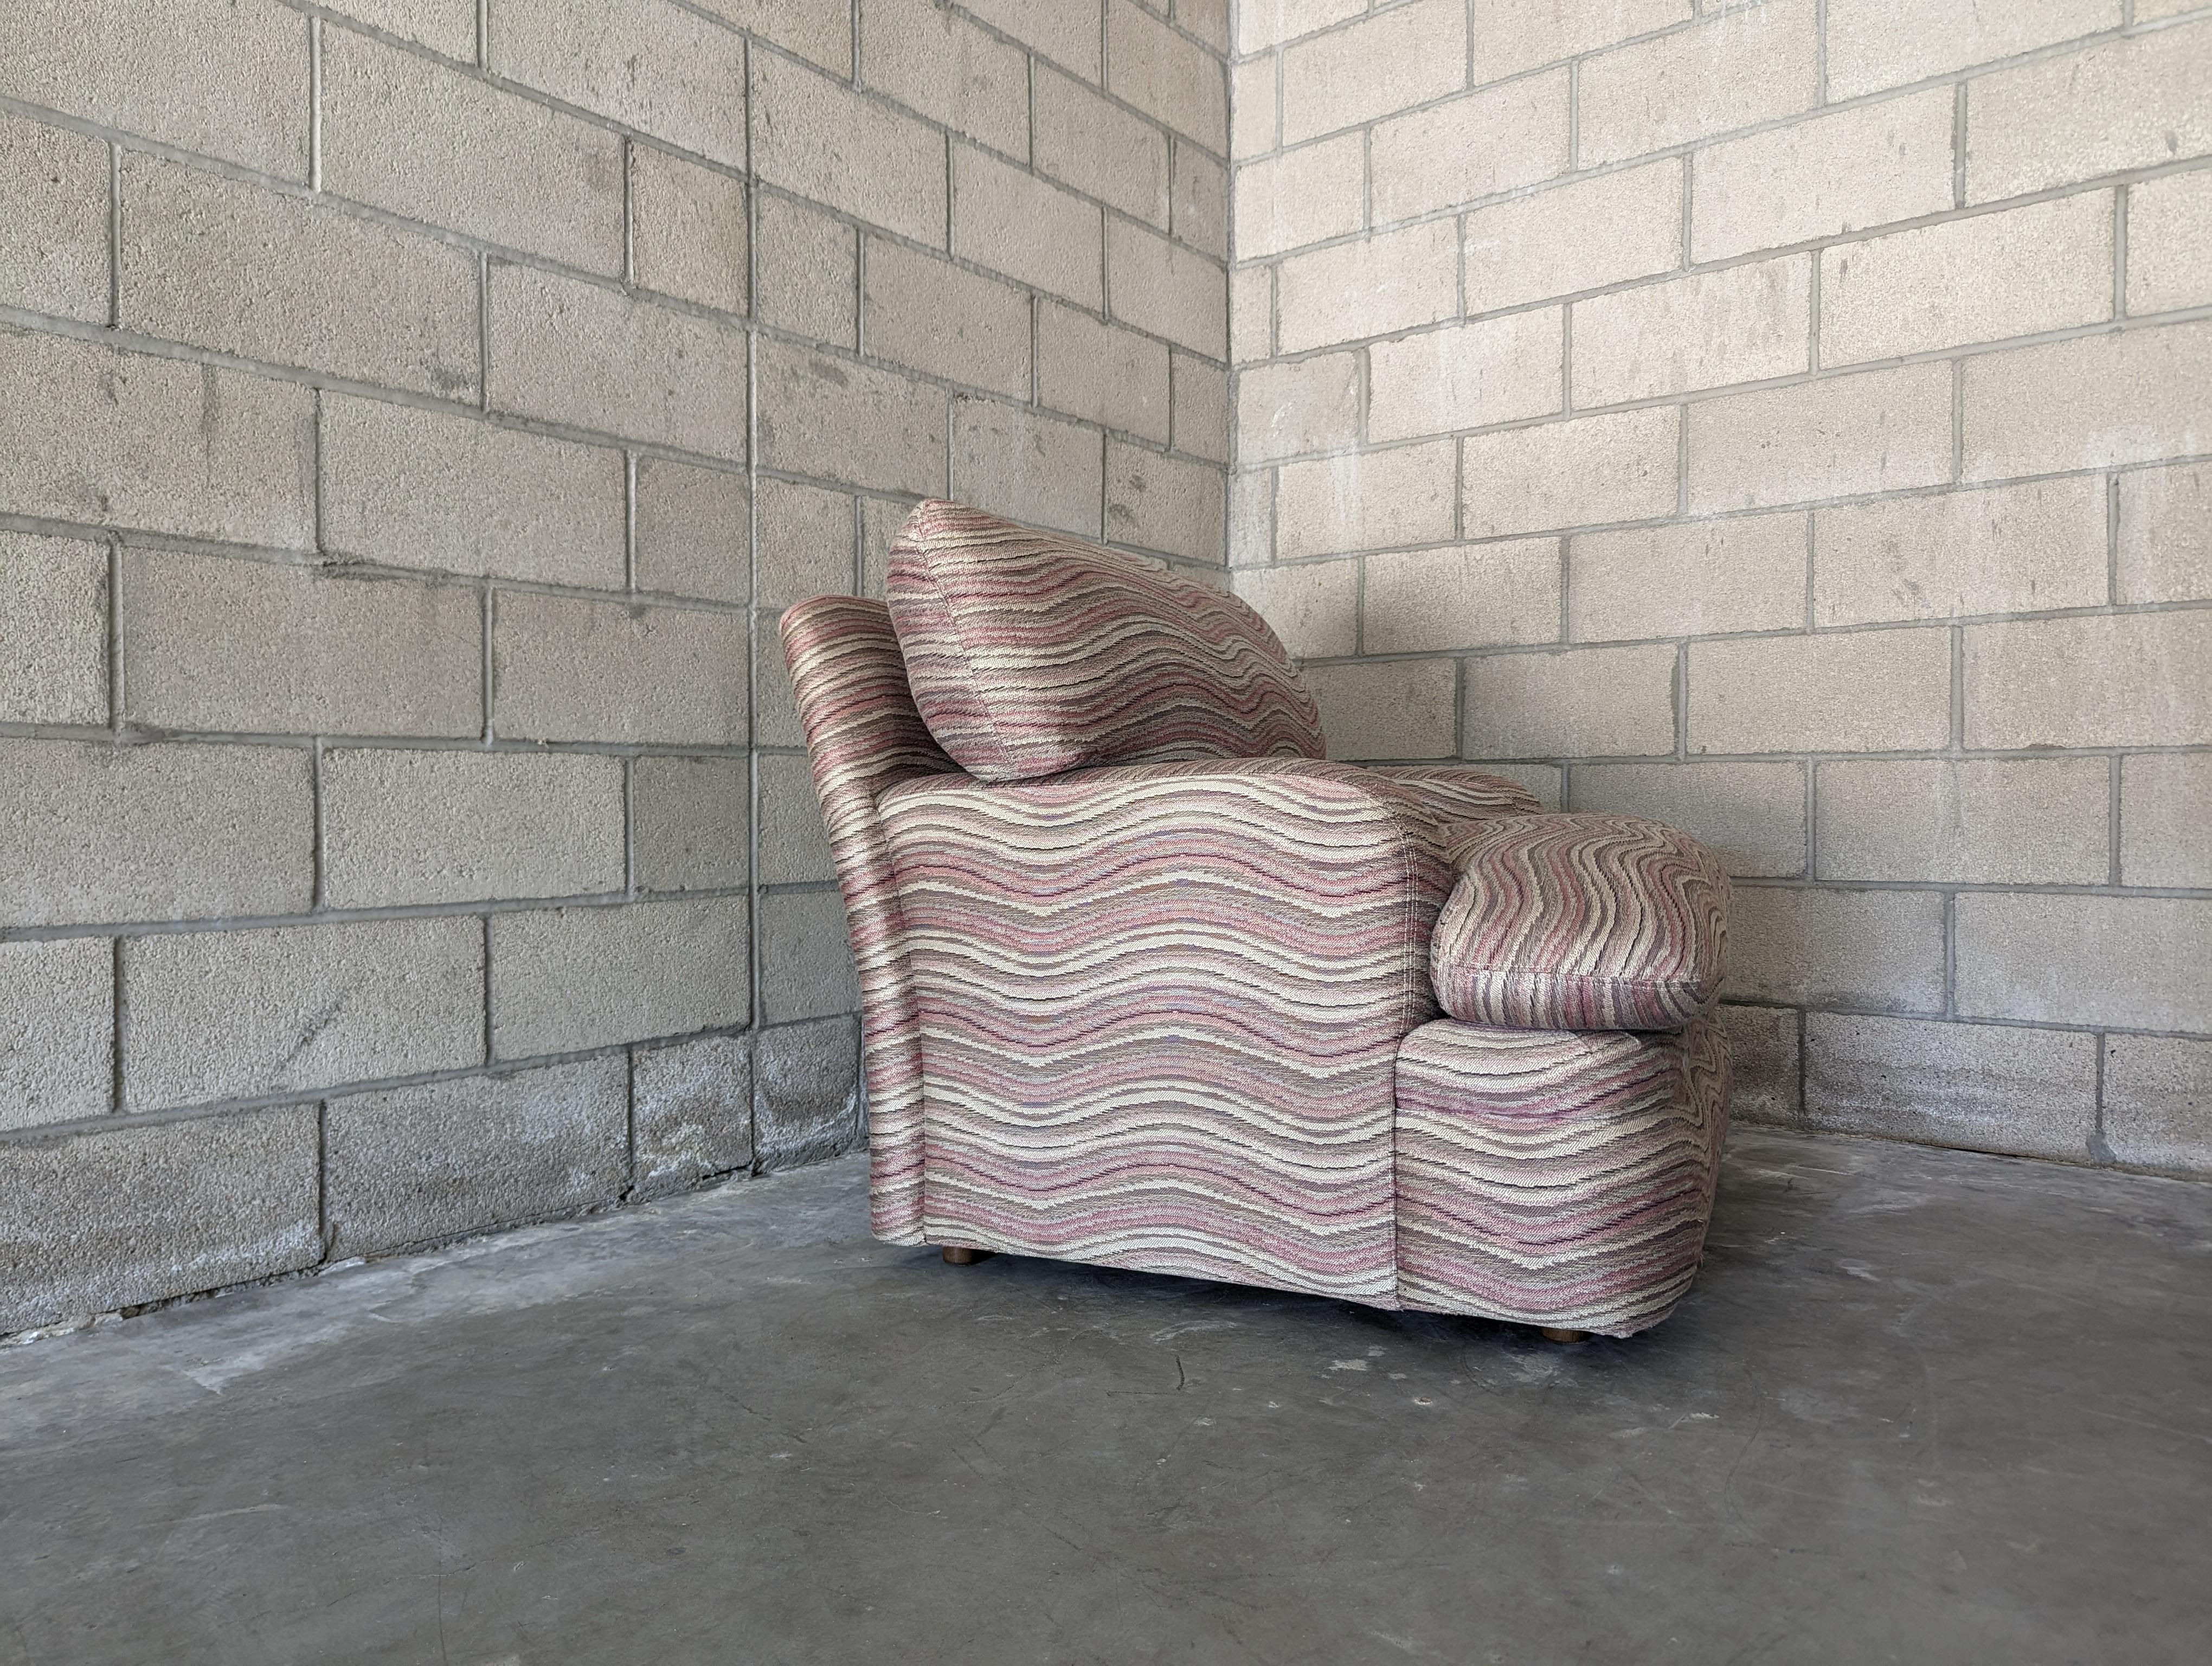 Ce fauteuil postmoderne au design distinctif, datant des années 1980, est une incarnation du style et du confort. Il capture magnifiquement l'essence éclectique de l'époque avec sa forme unique et son tissu qui attire l'attention.

La chaise mesure